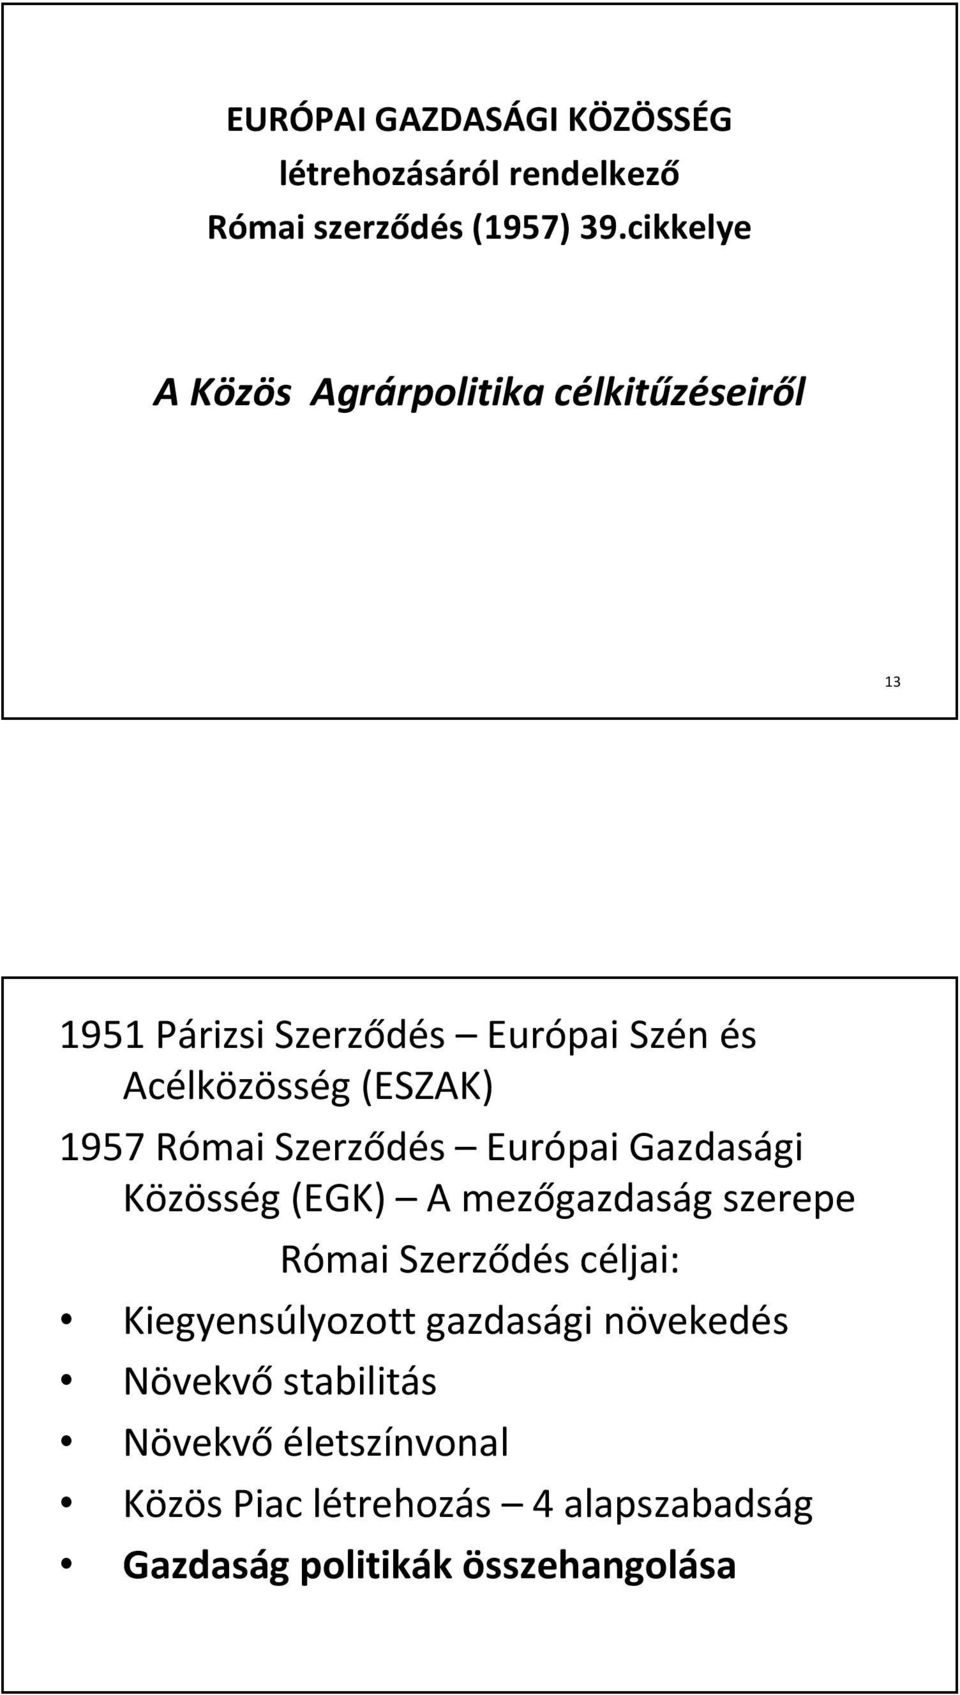 1957 Római Szerződés Európai Gazdasági Közösség (EGK) A mezőgazdaság szerepe Római Szerződés céljai: